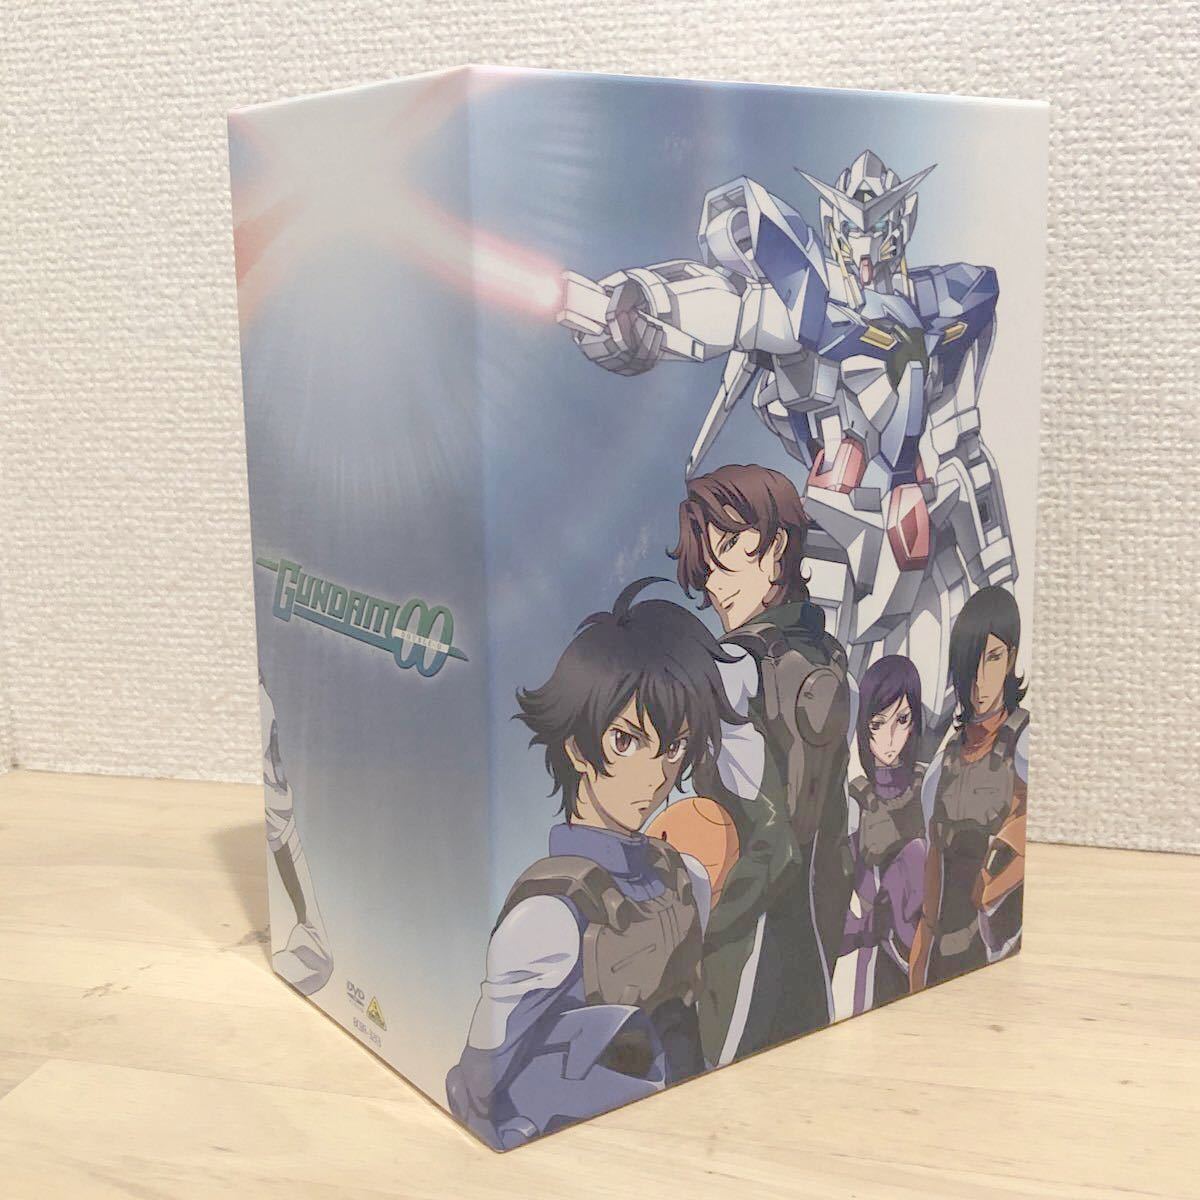 機動戦士ガンダムダブルオー 7巻セット [DVD]収納BOX付き